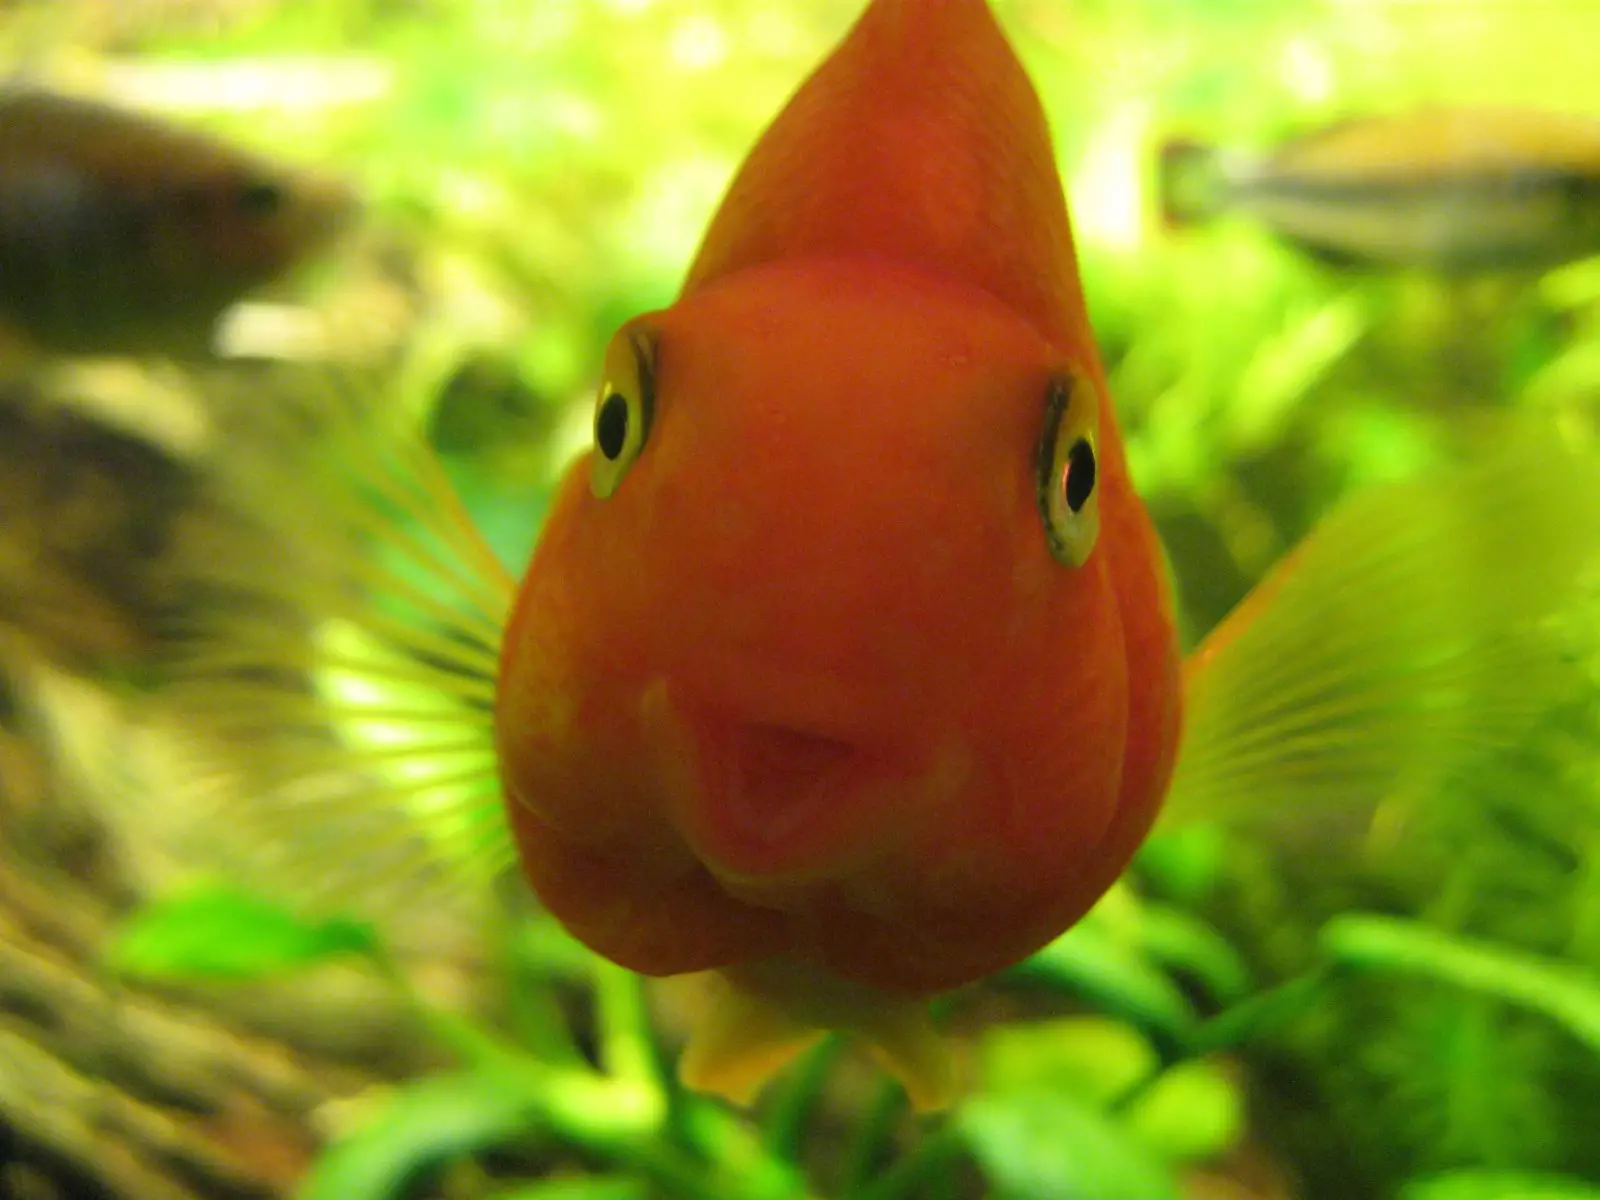 Nejkrásnější ryba